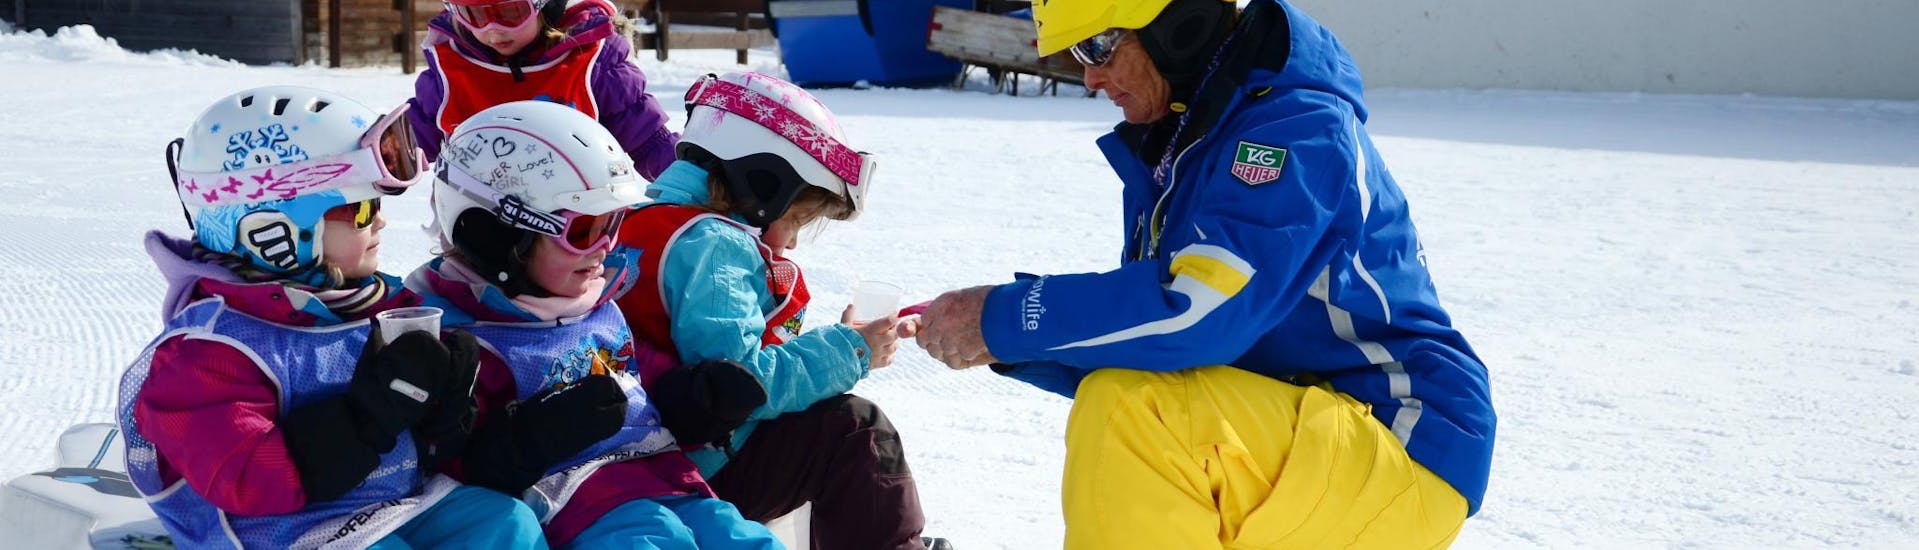 Skilessen voor Kinderen "Bolgen" (4-7 jaar) voor Beginners.